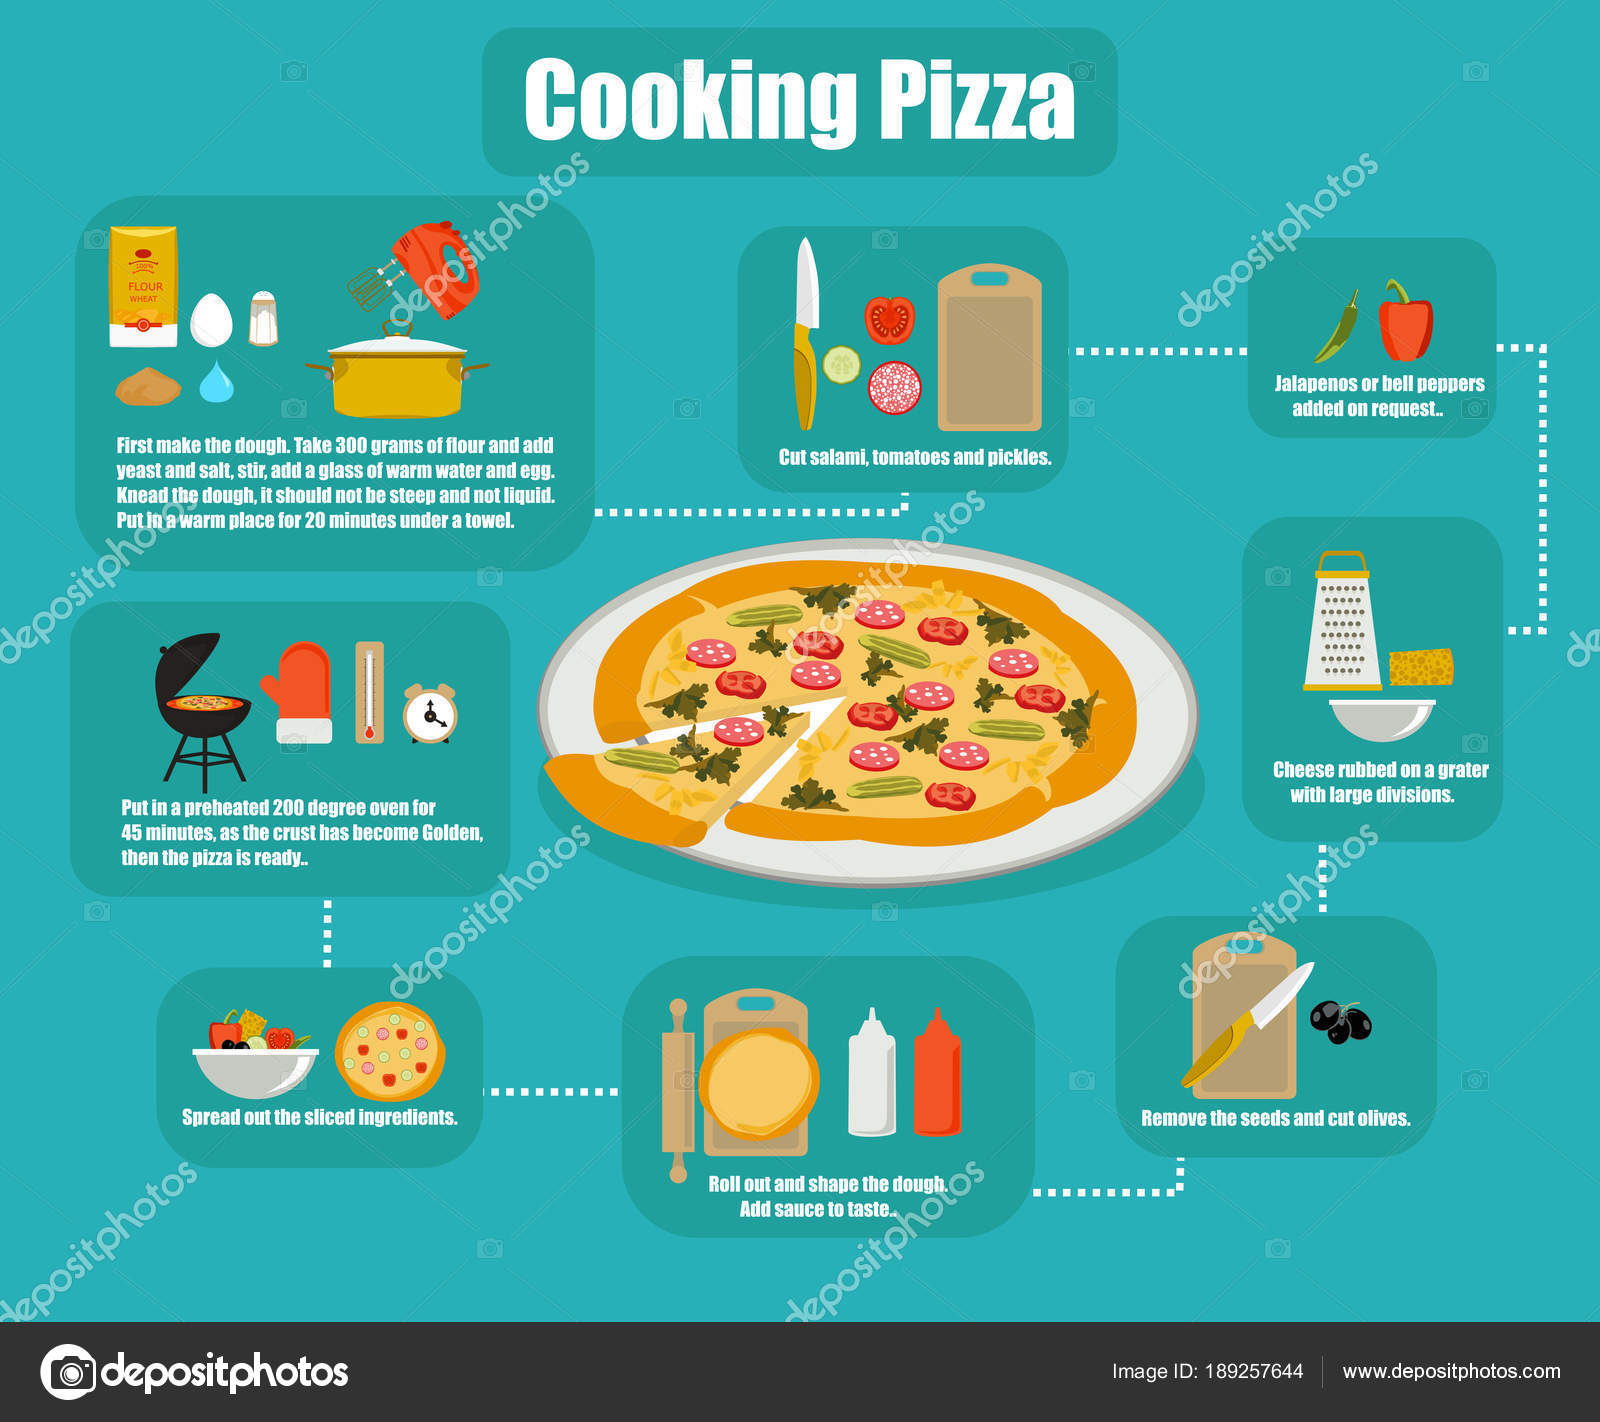 этапы рецепта приготовления пиццы фото 85